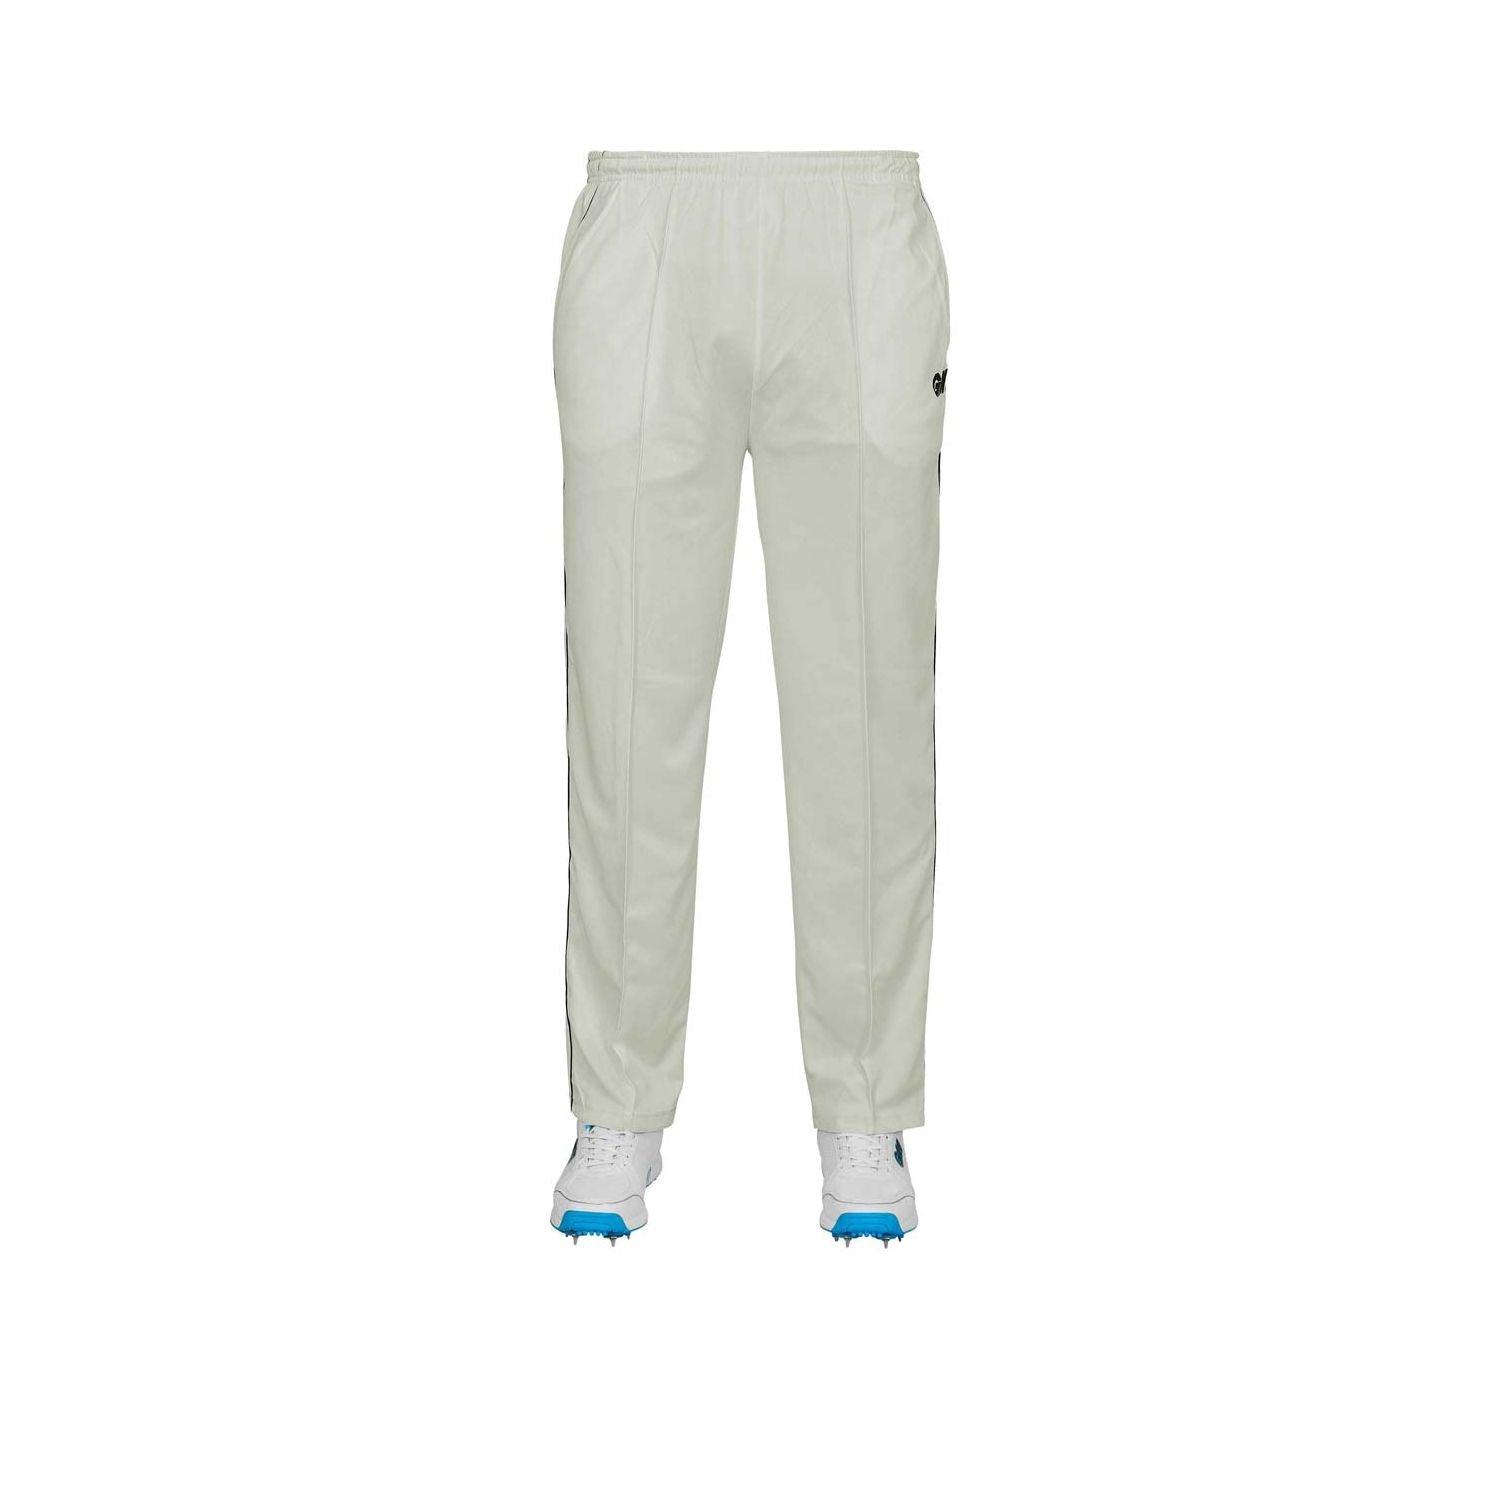 Kookaburra Cricket Pants | Cricket Clothing | Kookaburra